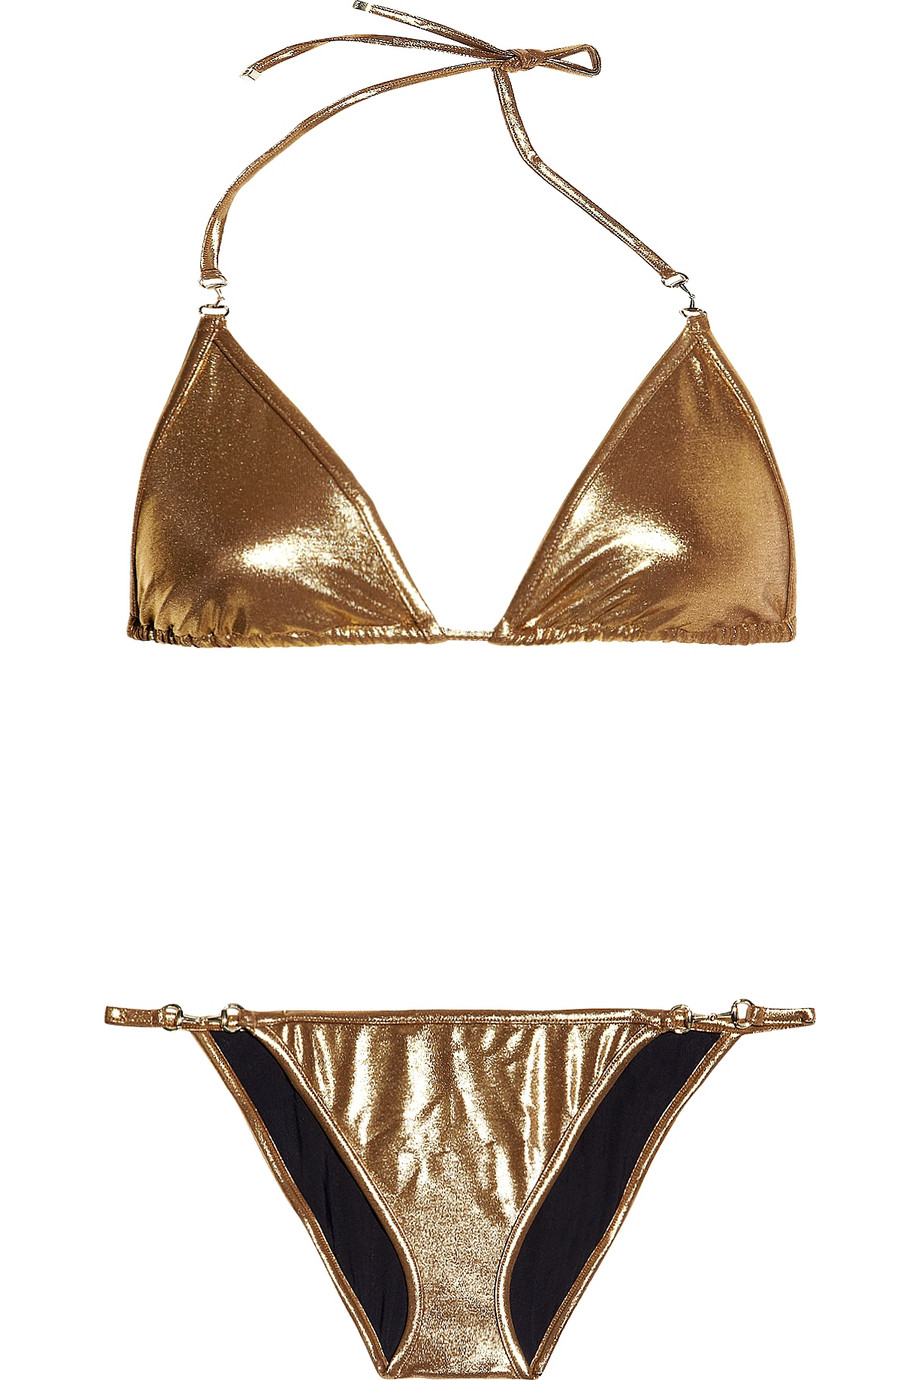 Gucci Metallic Triangle Bikini in Metallic - Lyst